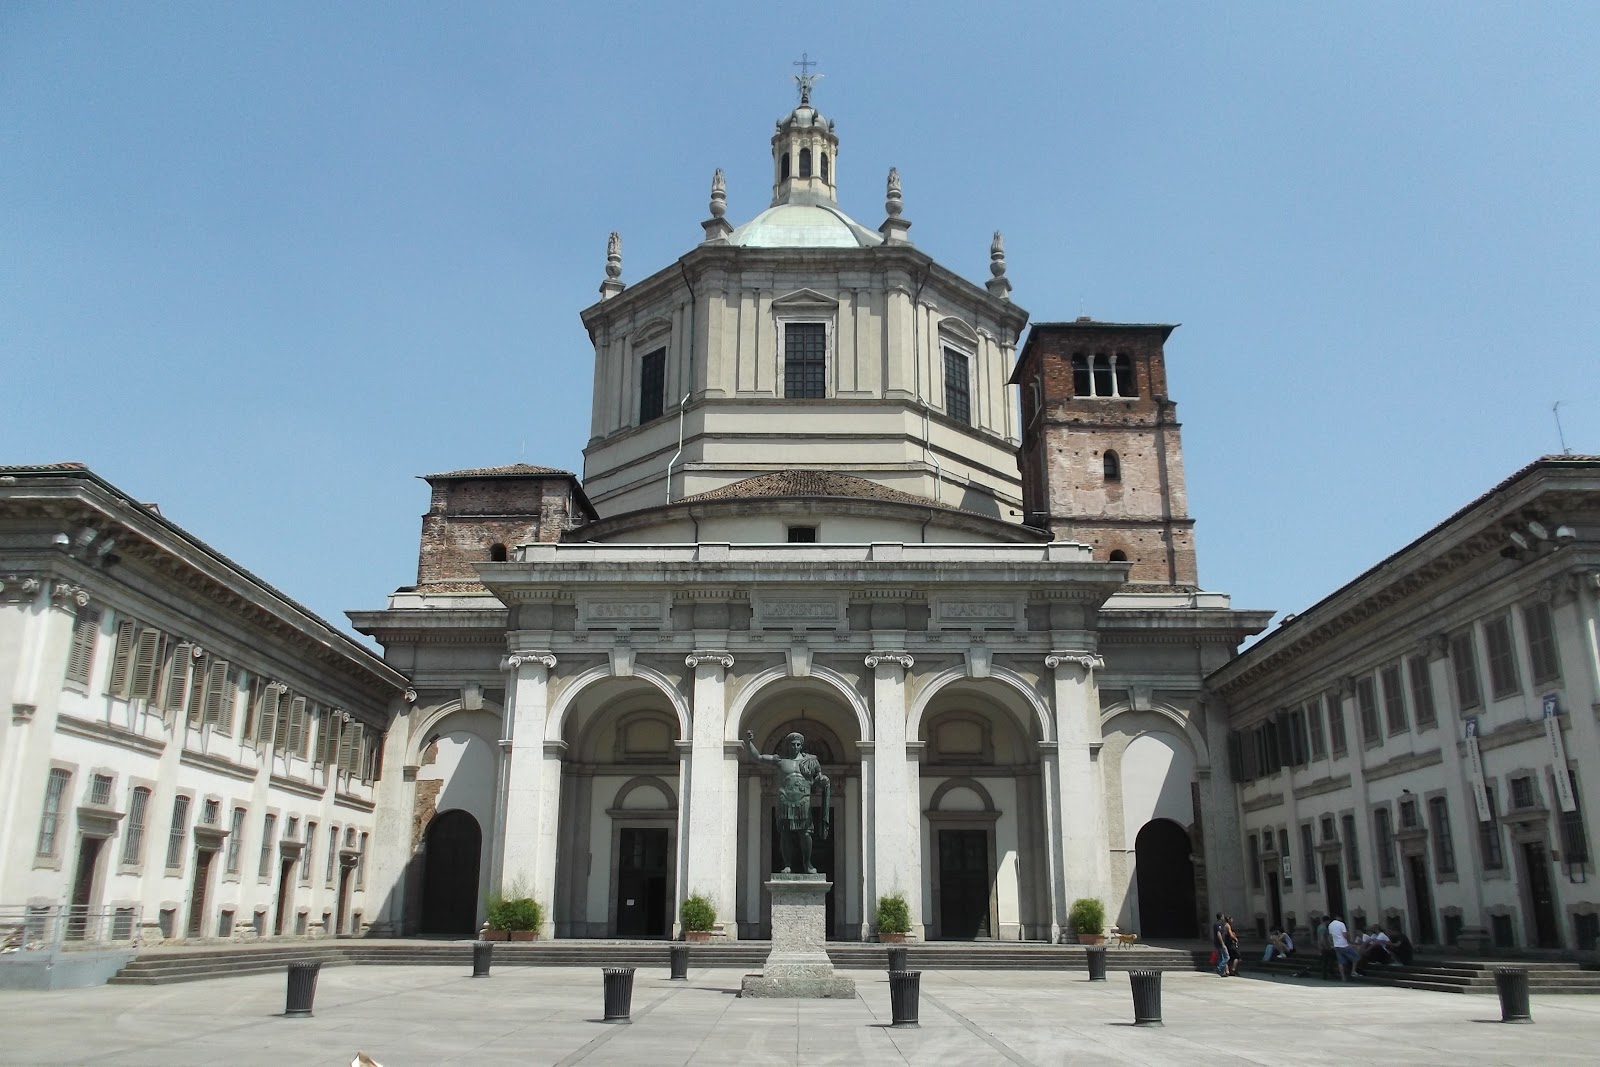 サン・ロレンツォ・マッジョーレ大聖堂のコンスタンティヌス大帝の彫像が立てられた正面広場